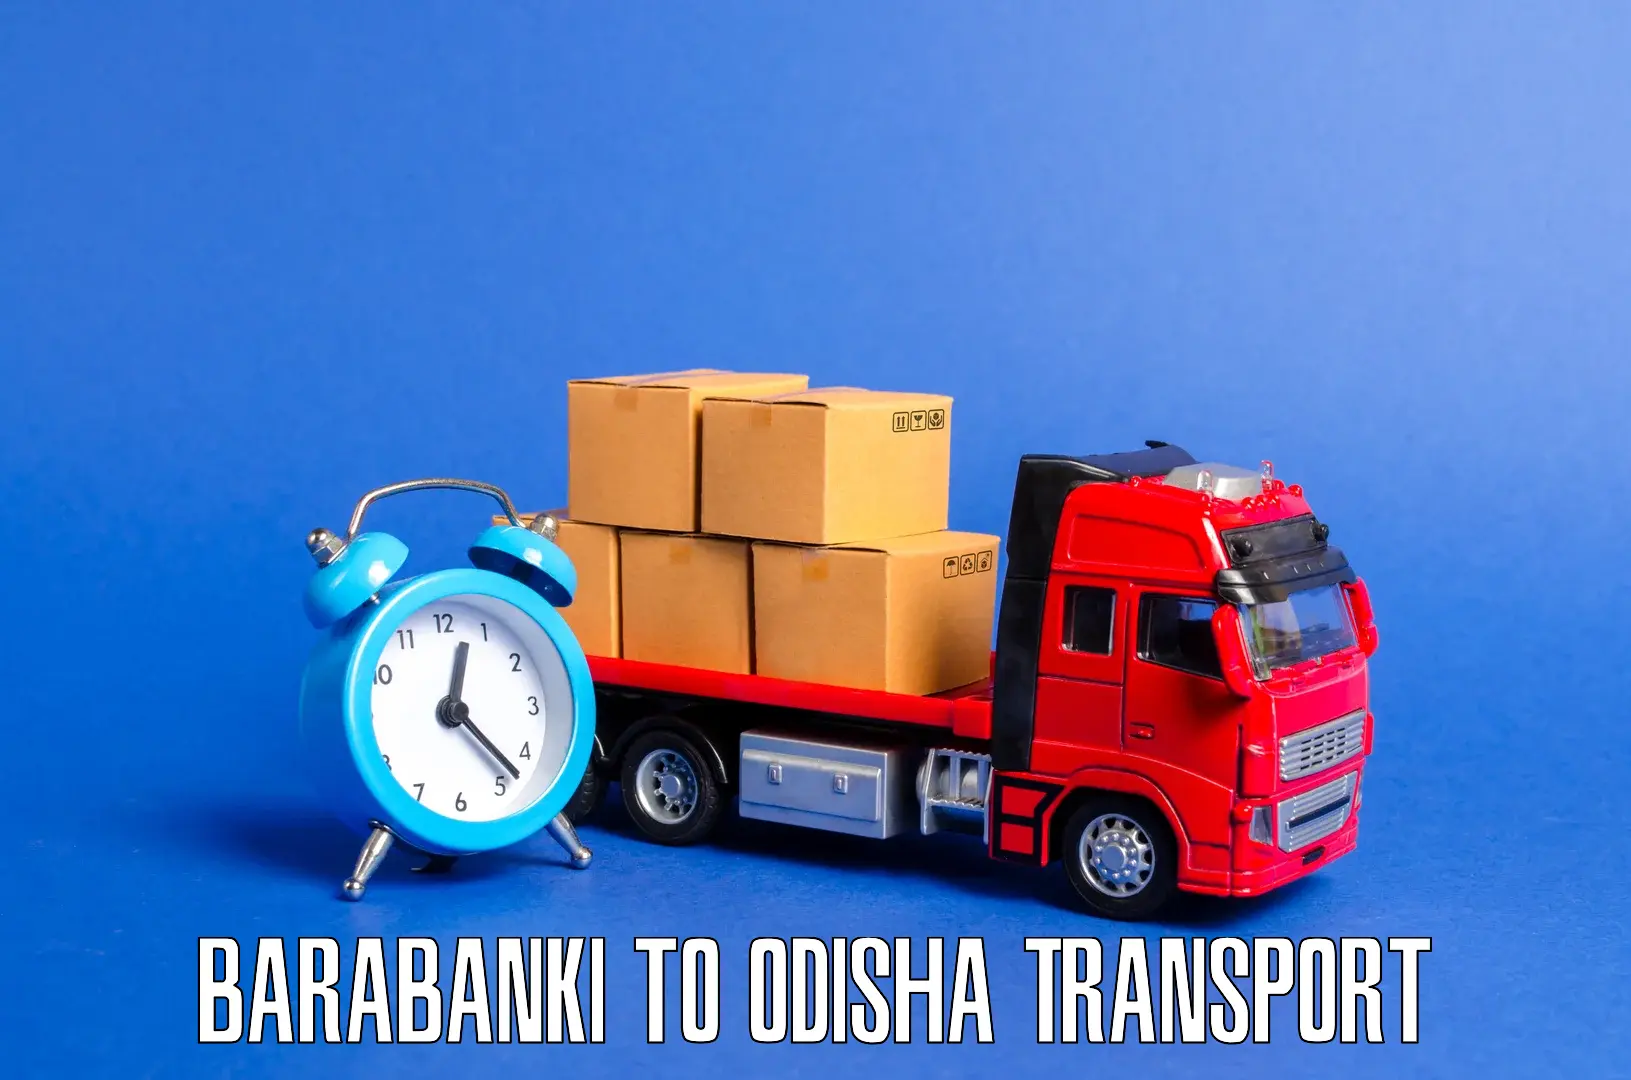 All India transport service Barabanki to Kotapad